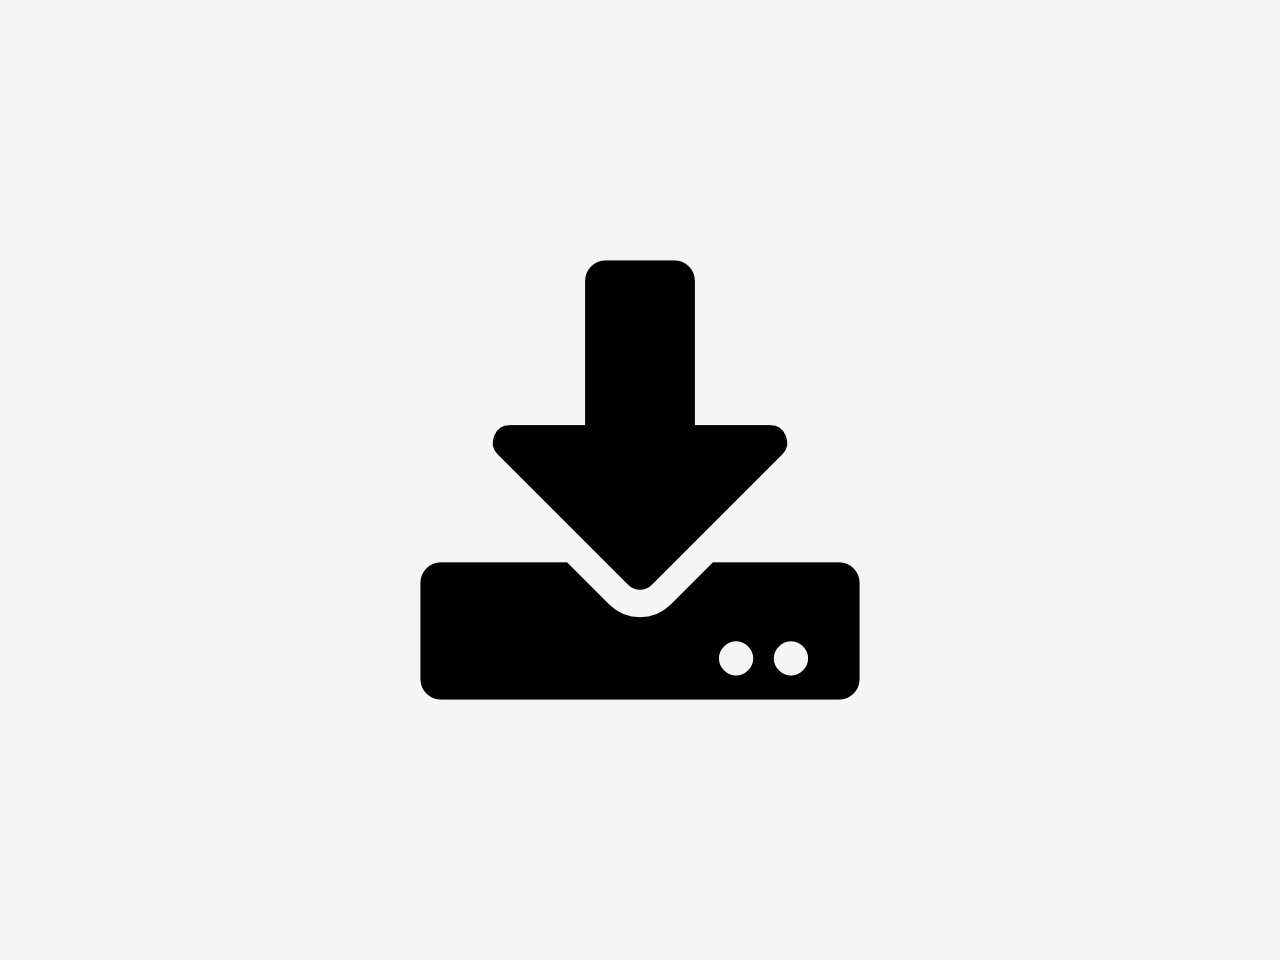 Bild zeigt ein Symbol für Download. Das Symbol zeigt einen nach unten gehenden Pfeil, der auf eine Festplatte zielt.